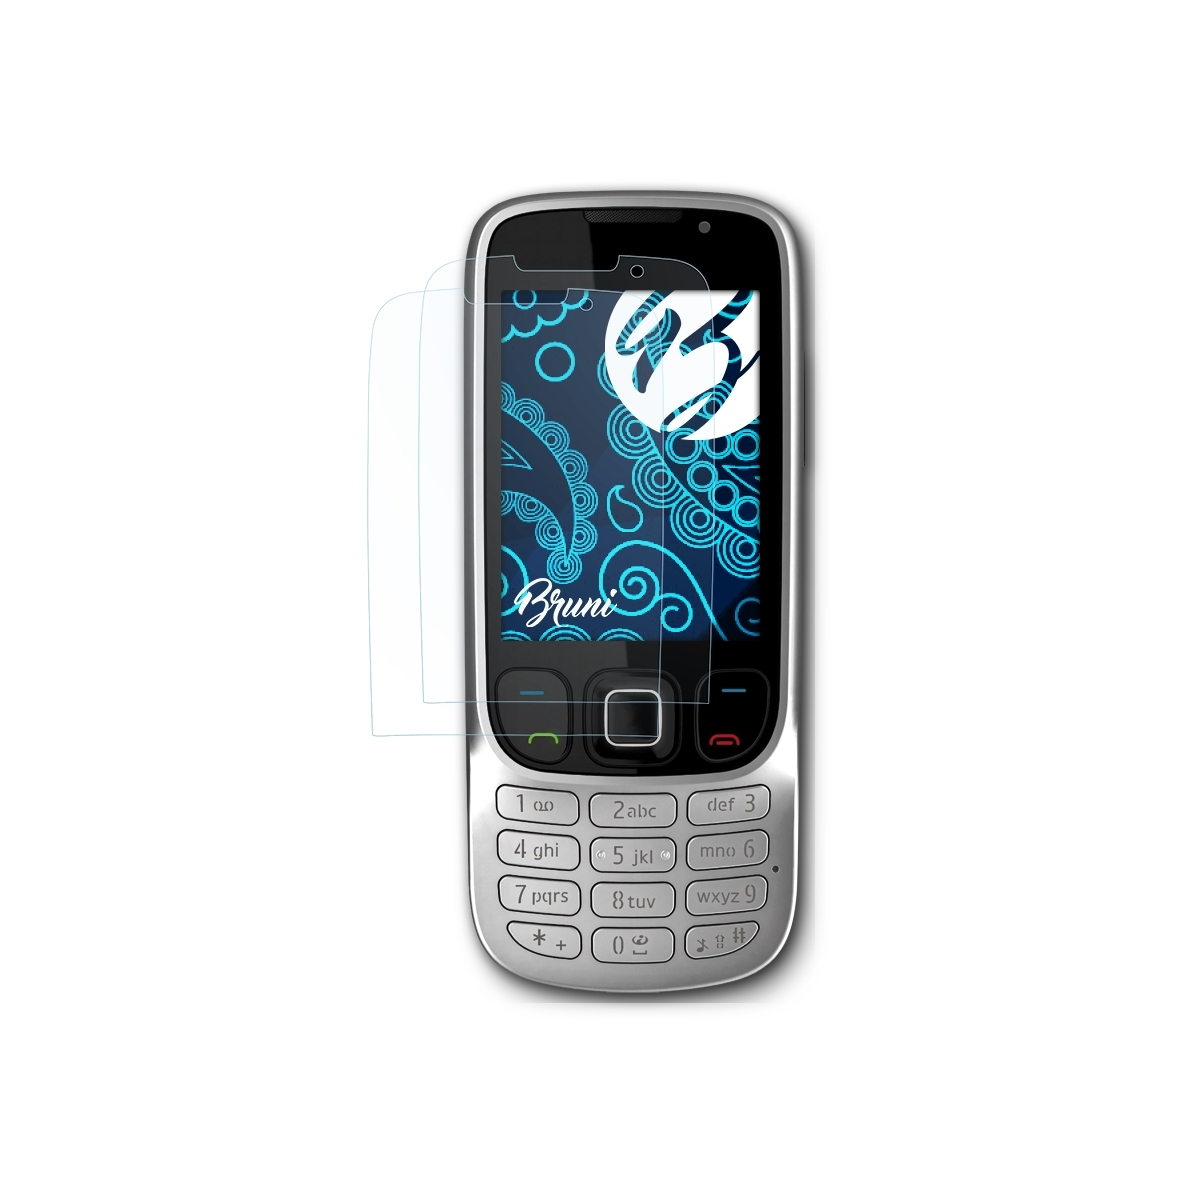 BRUNI 6303 2x Schutzfolie(für Nokia Classic) Basics-Clear